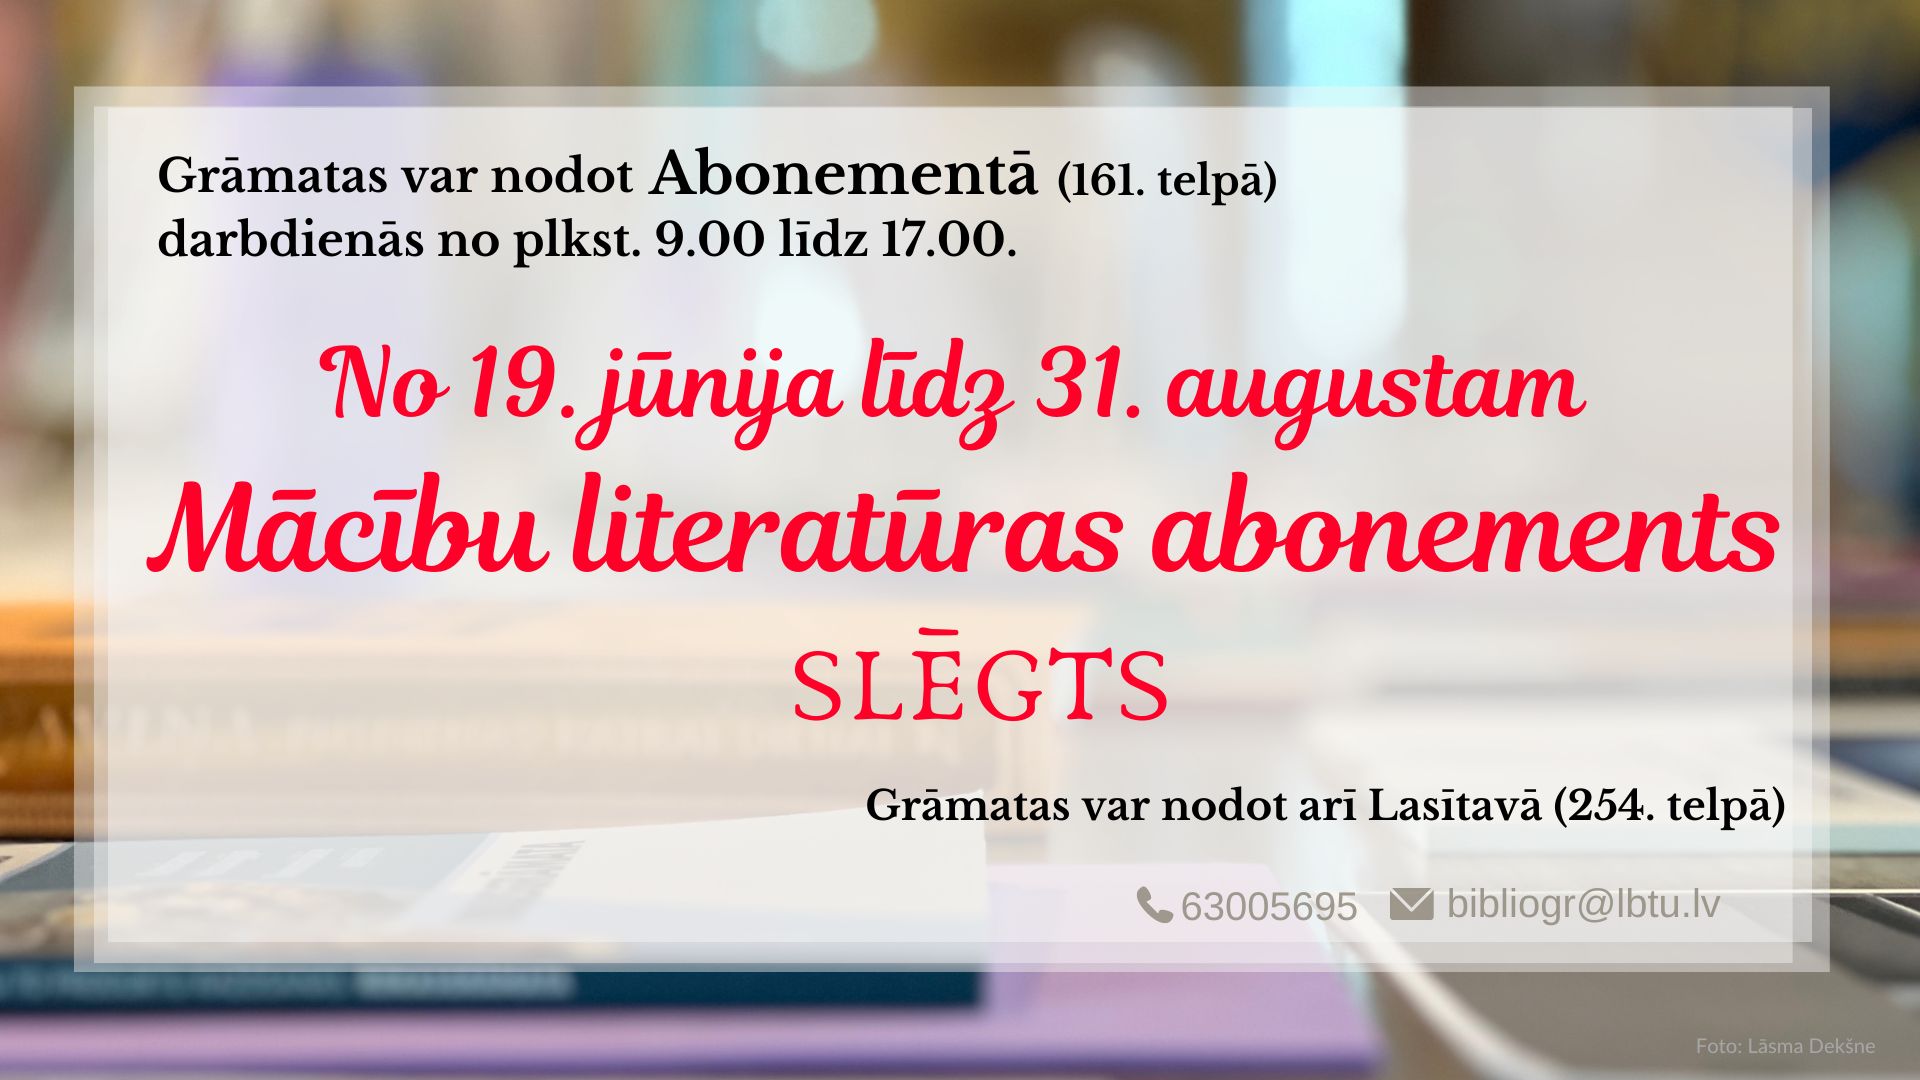 Grāmatas var atdot Abonementā (161. telpā) vai Lasītavā (254. telpā) darbadienās no plkst. 9.00 līdz 17.00.  No 19. jūnija līdz 31. augustam Mācību literatūras abonements slēgts. 